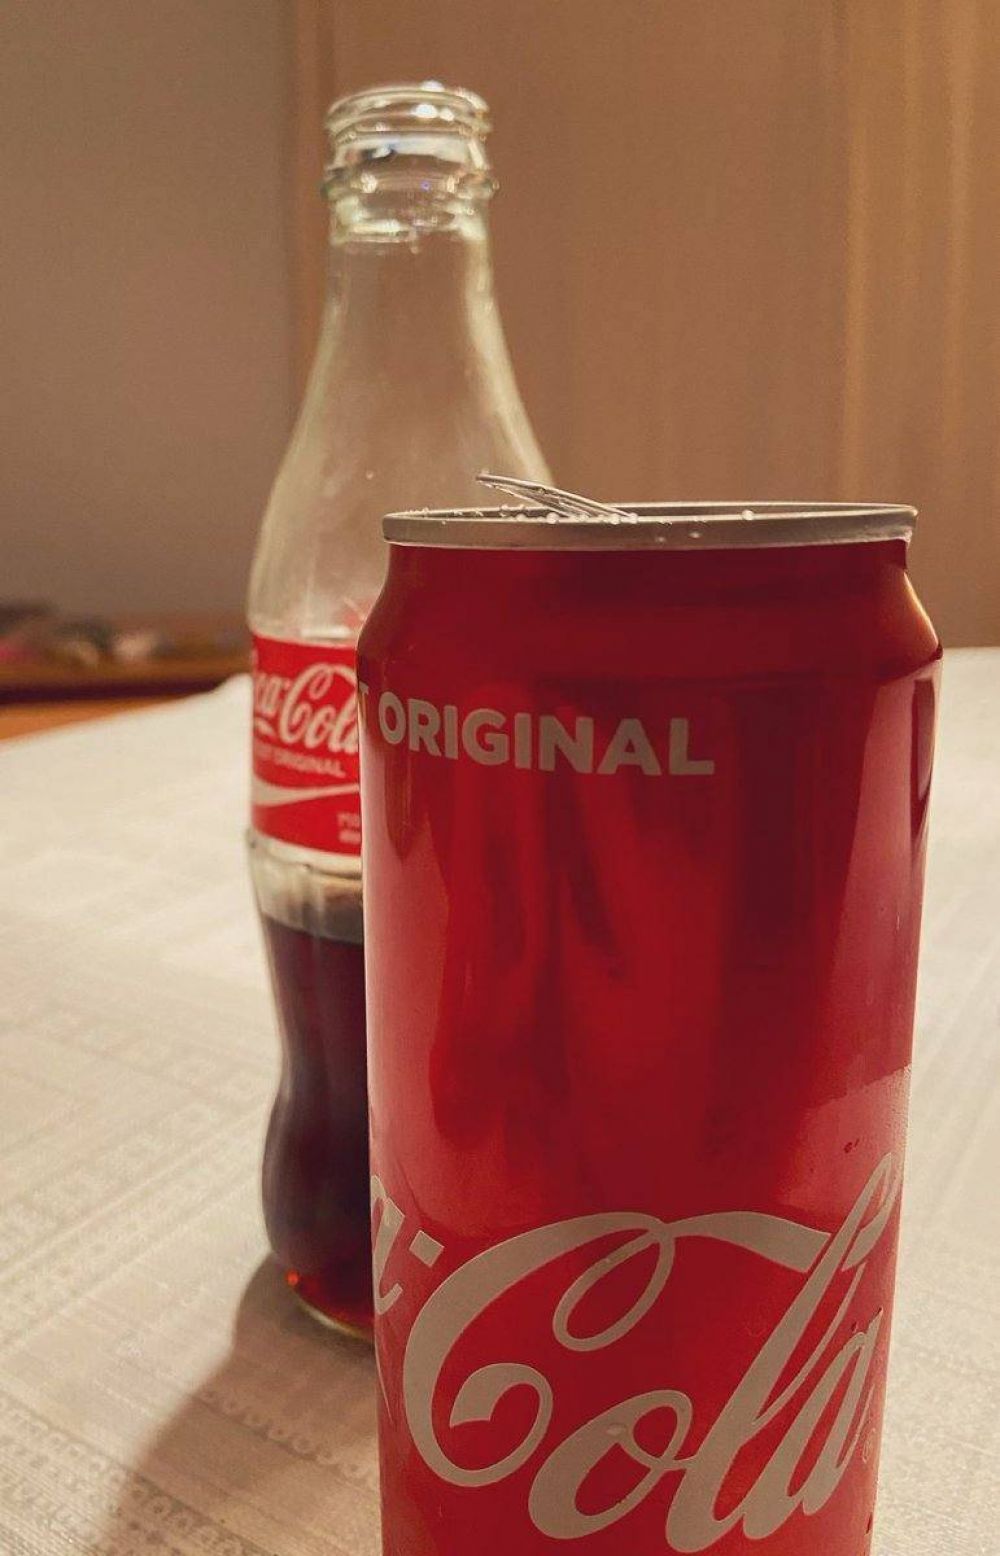 Vampipe compara dos tipos de Coca-Cola y promocin acaba en disparo contra la marca